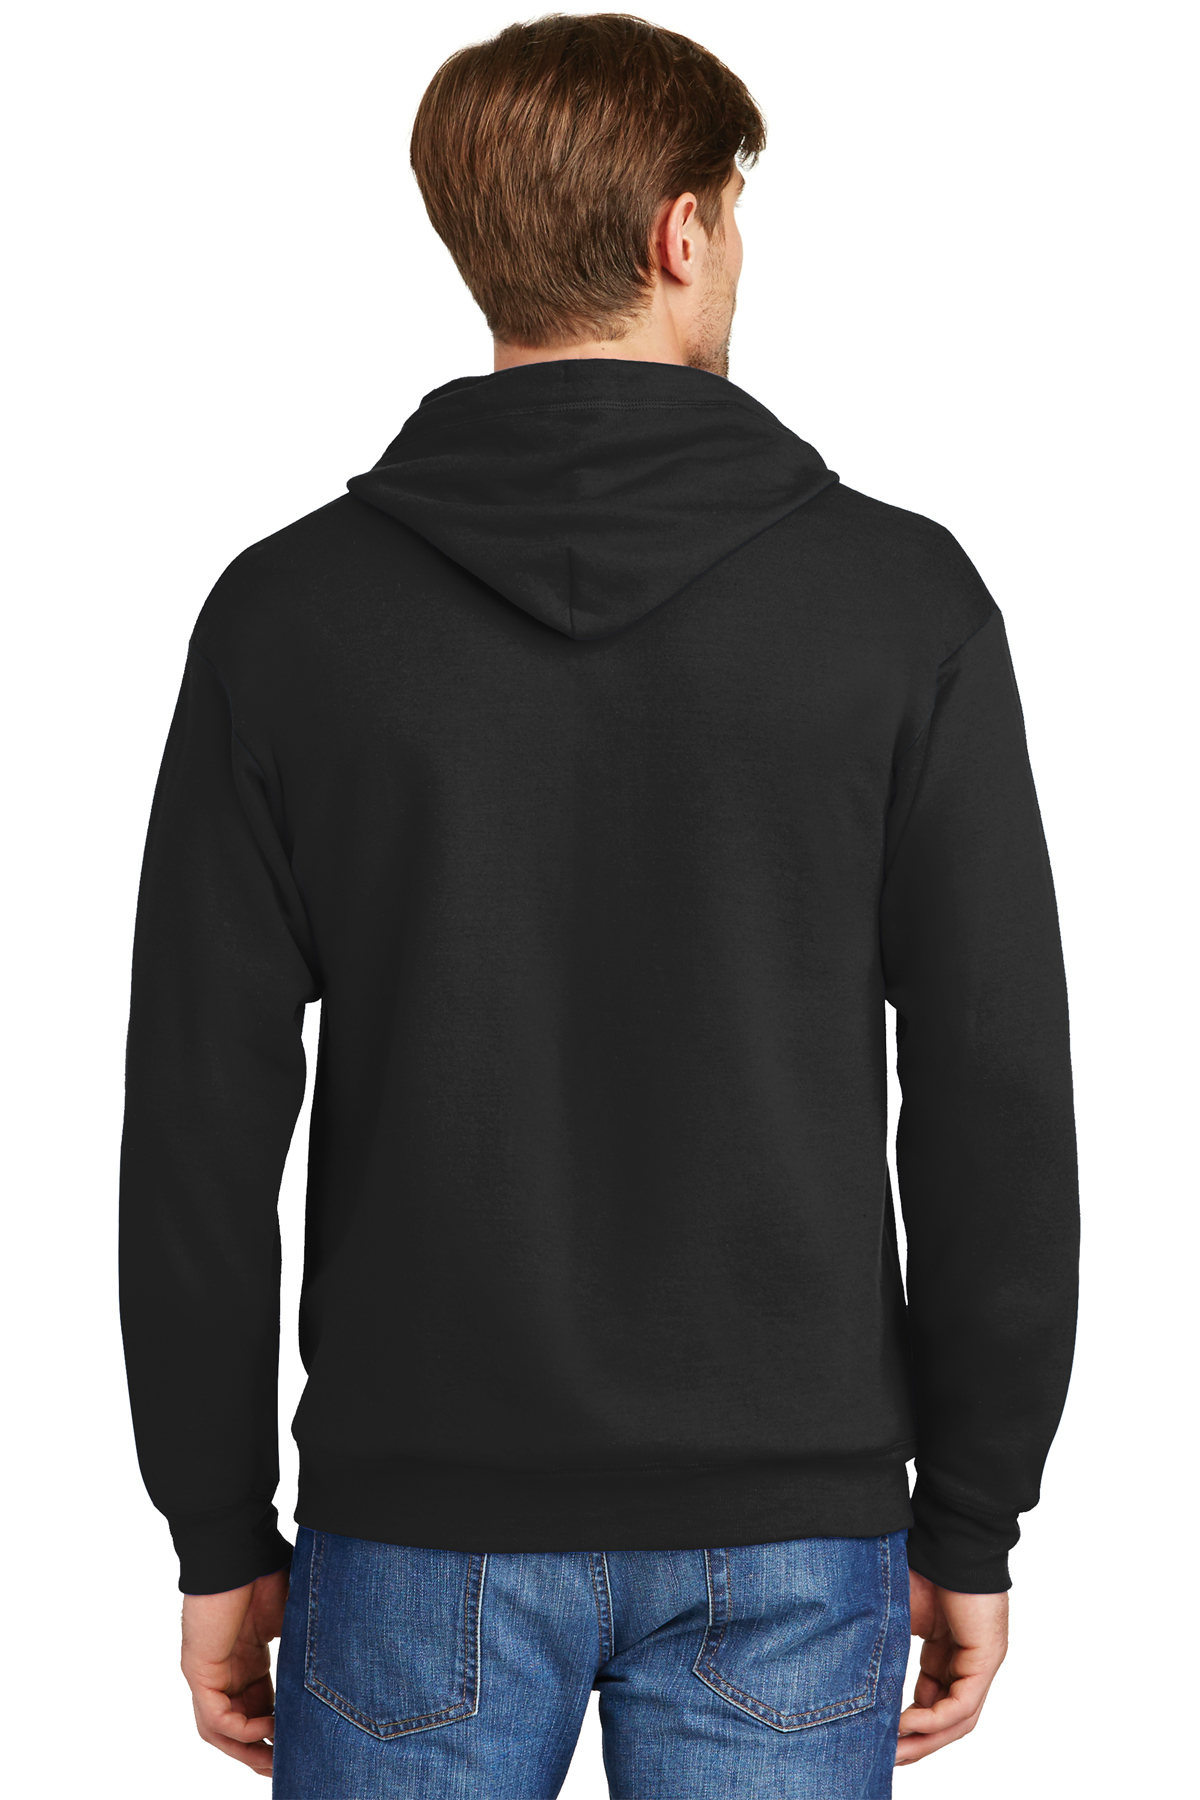 Hanes - EcoSmart Full-Zip Hooded Sweatshirt | Product | SanMar